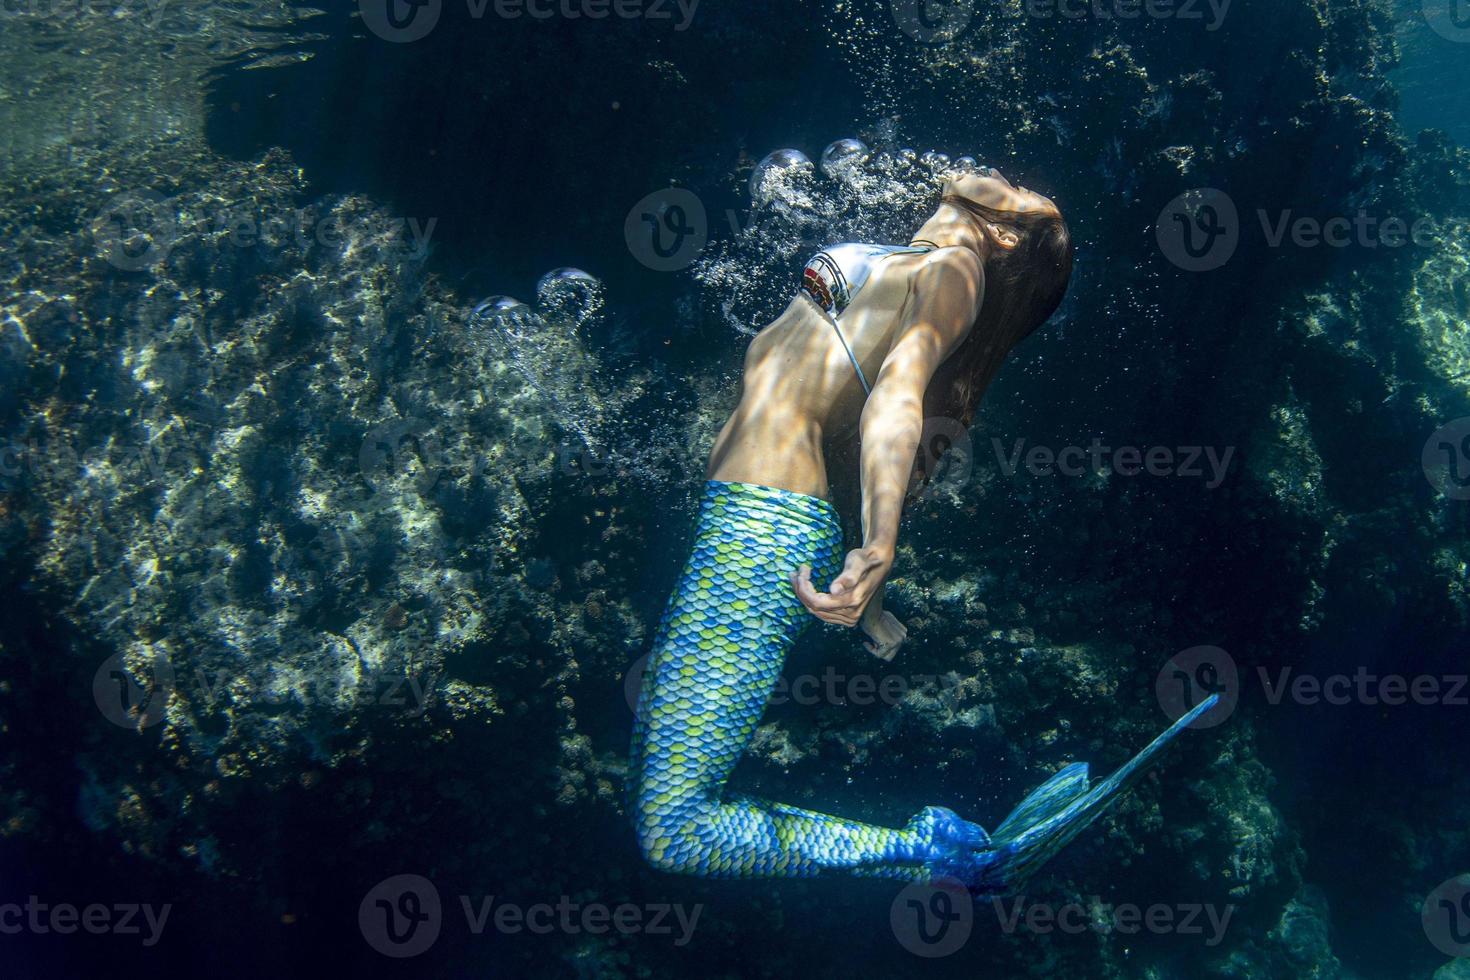 sirena nuoto subacqueo nel il in profondità blu mare foto